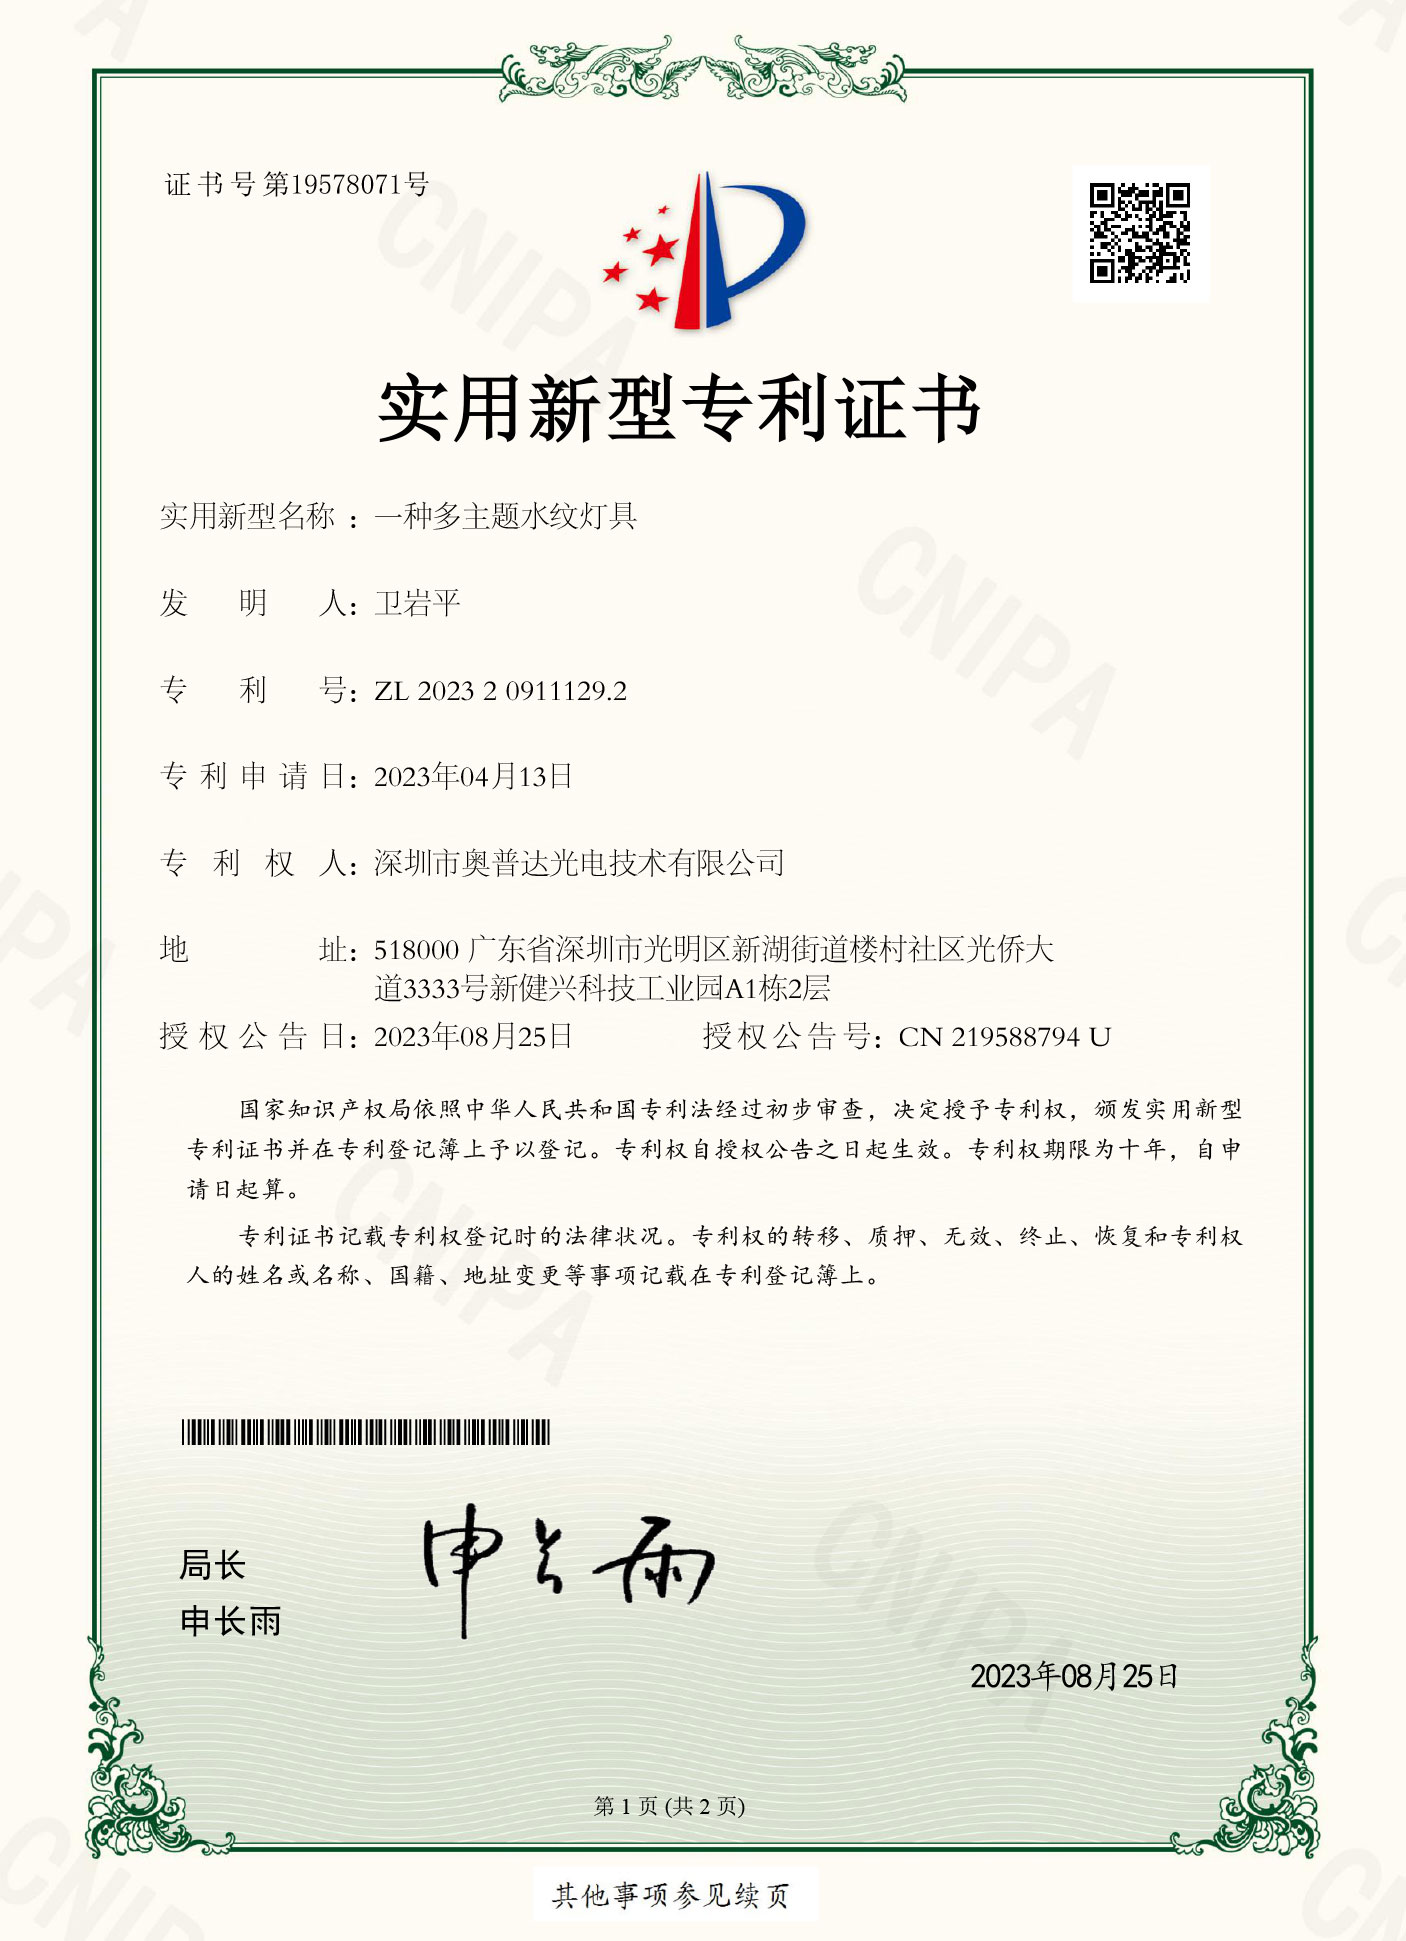 深圳市奥普达光电技术有限公司-2023209111292-实用新型专利证书(签章)